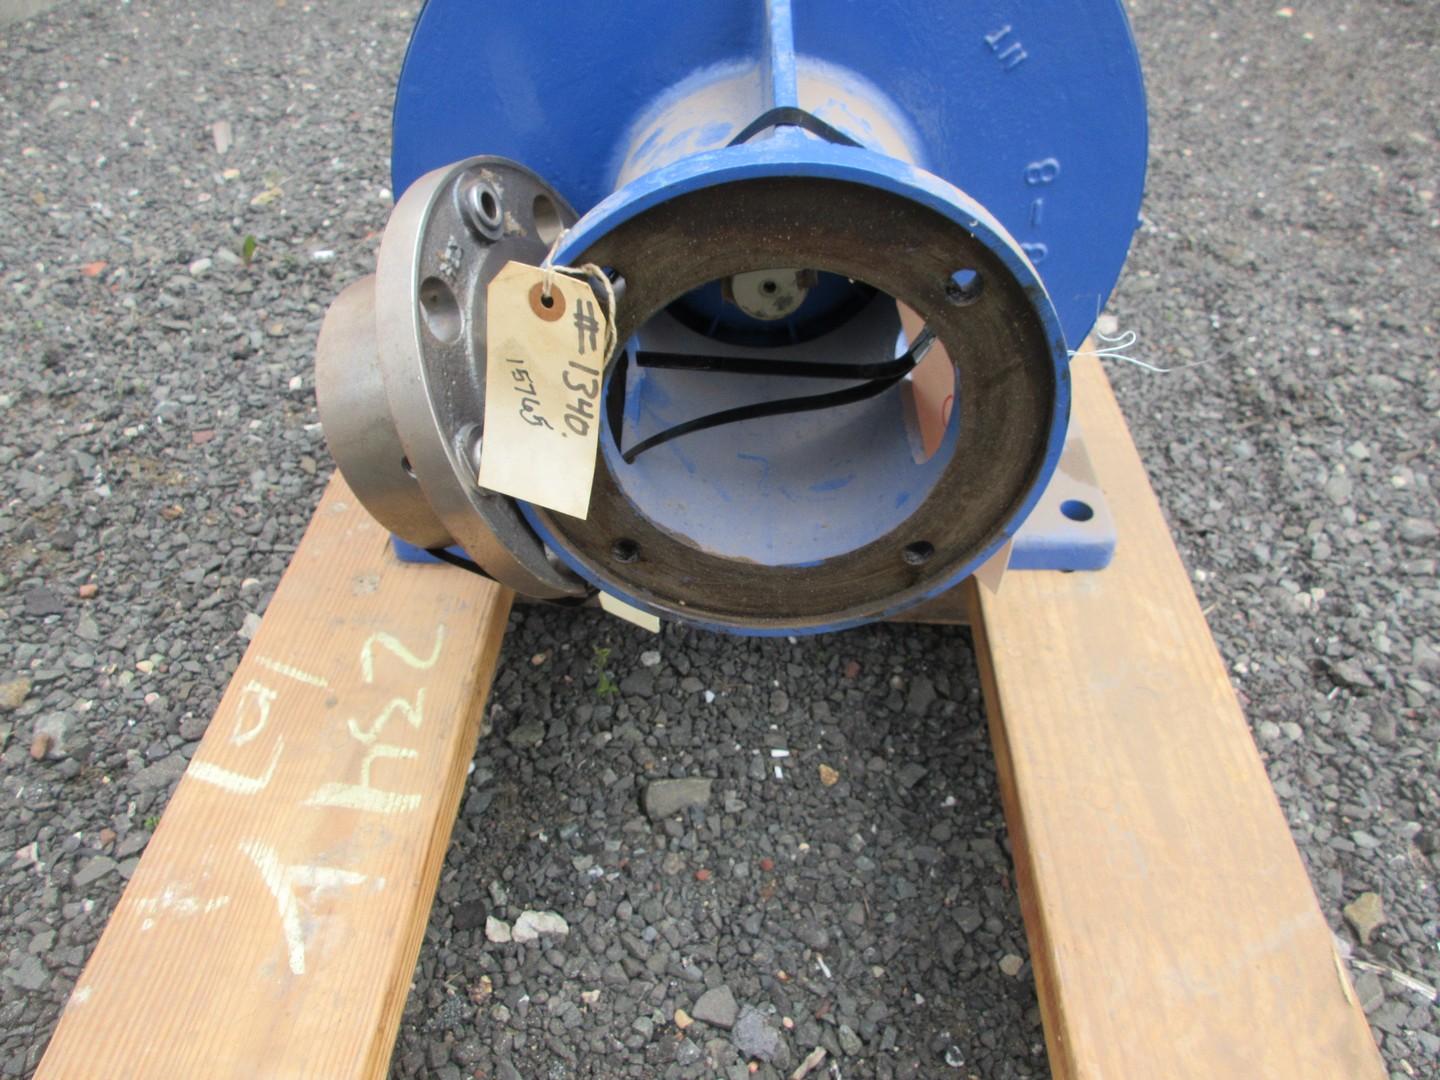 Sm-Cyclo Gear Box, Assorted Parts